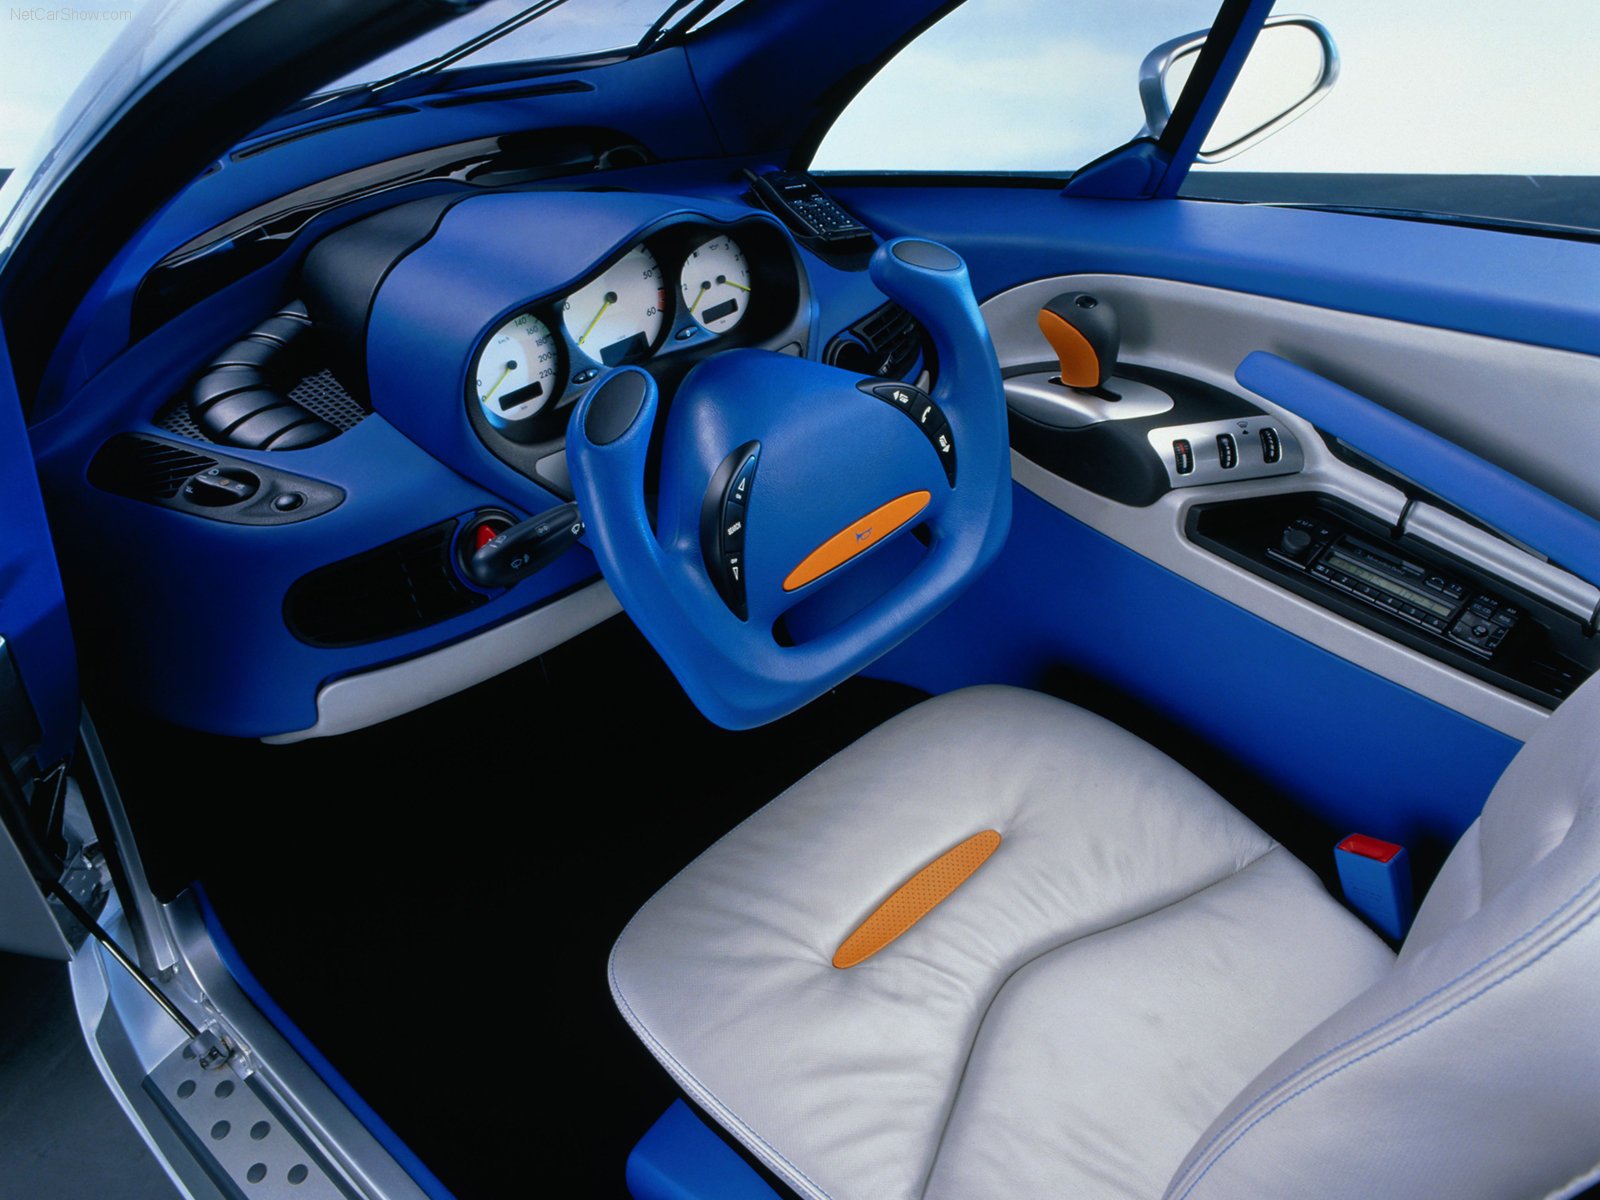 mercedes, Benz, F300, Concept, Cars, 1997 Wallpaper